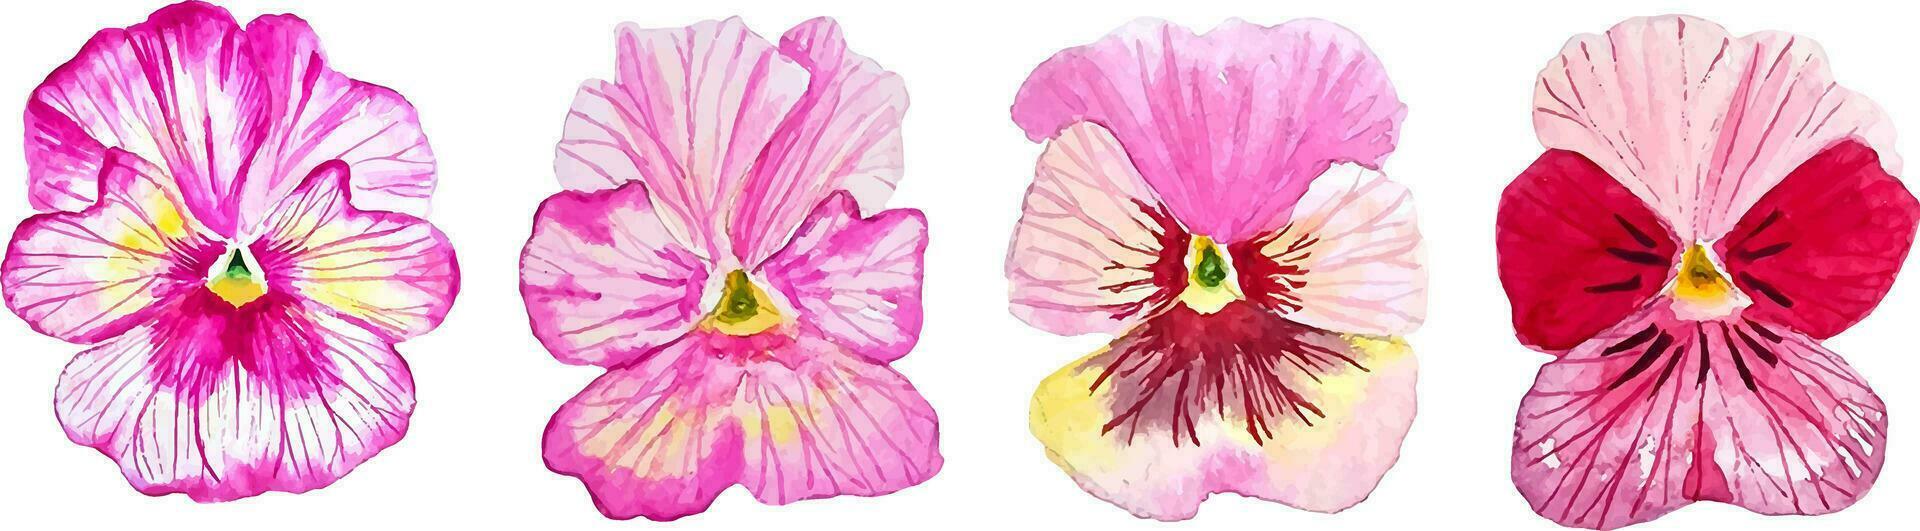 waterverf reeks van roze bloemen viooltje bloemen stickers voor ontwerp en decor vector